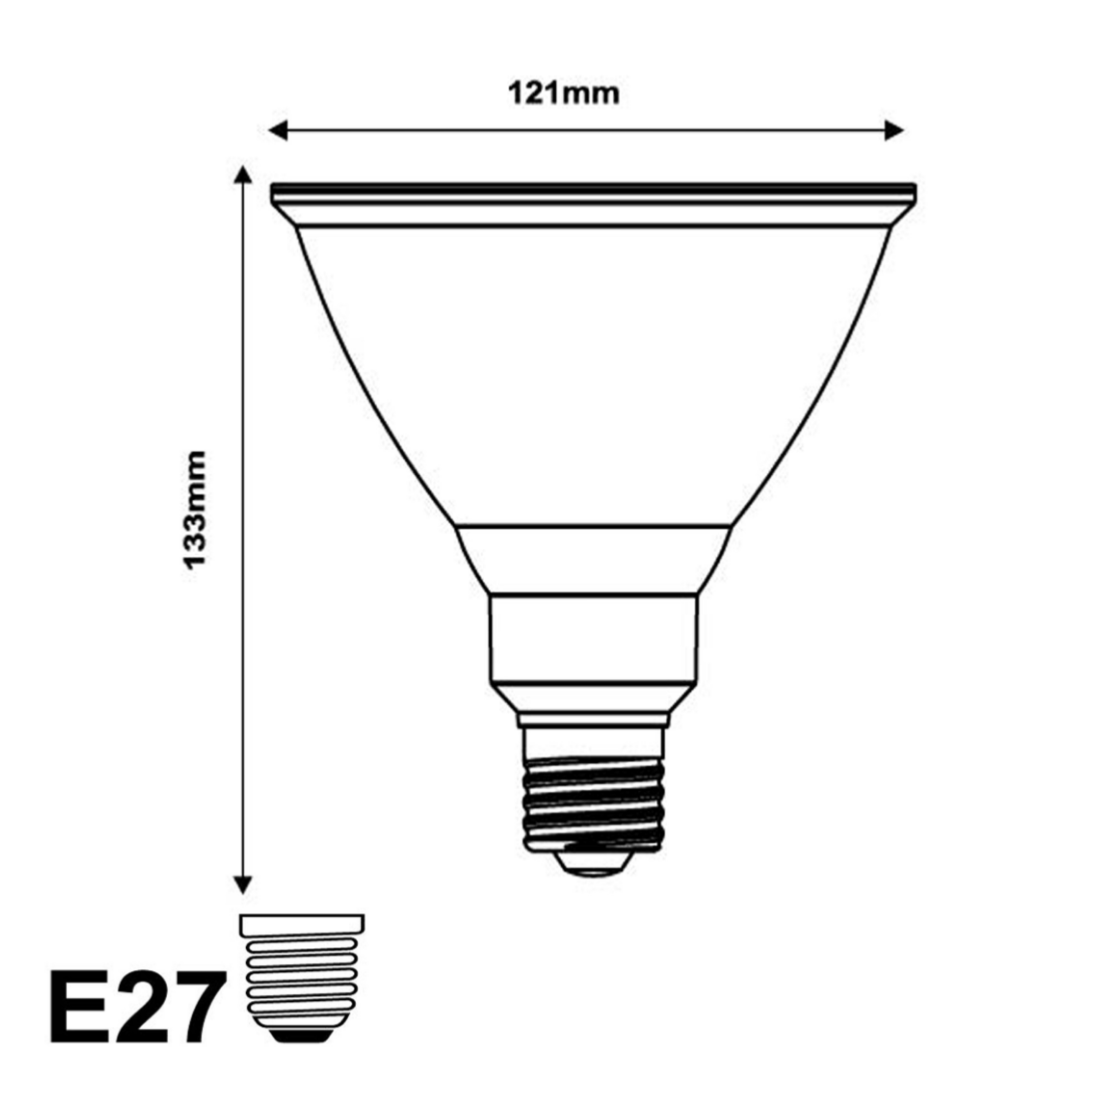 Ampoule LED E27 15W 220V PAR38